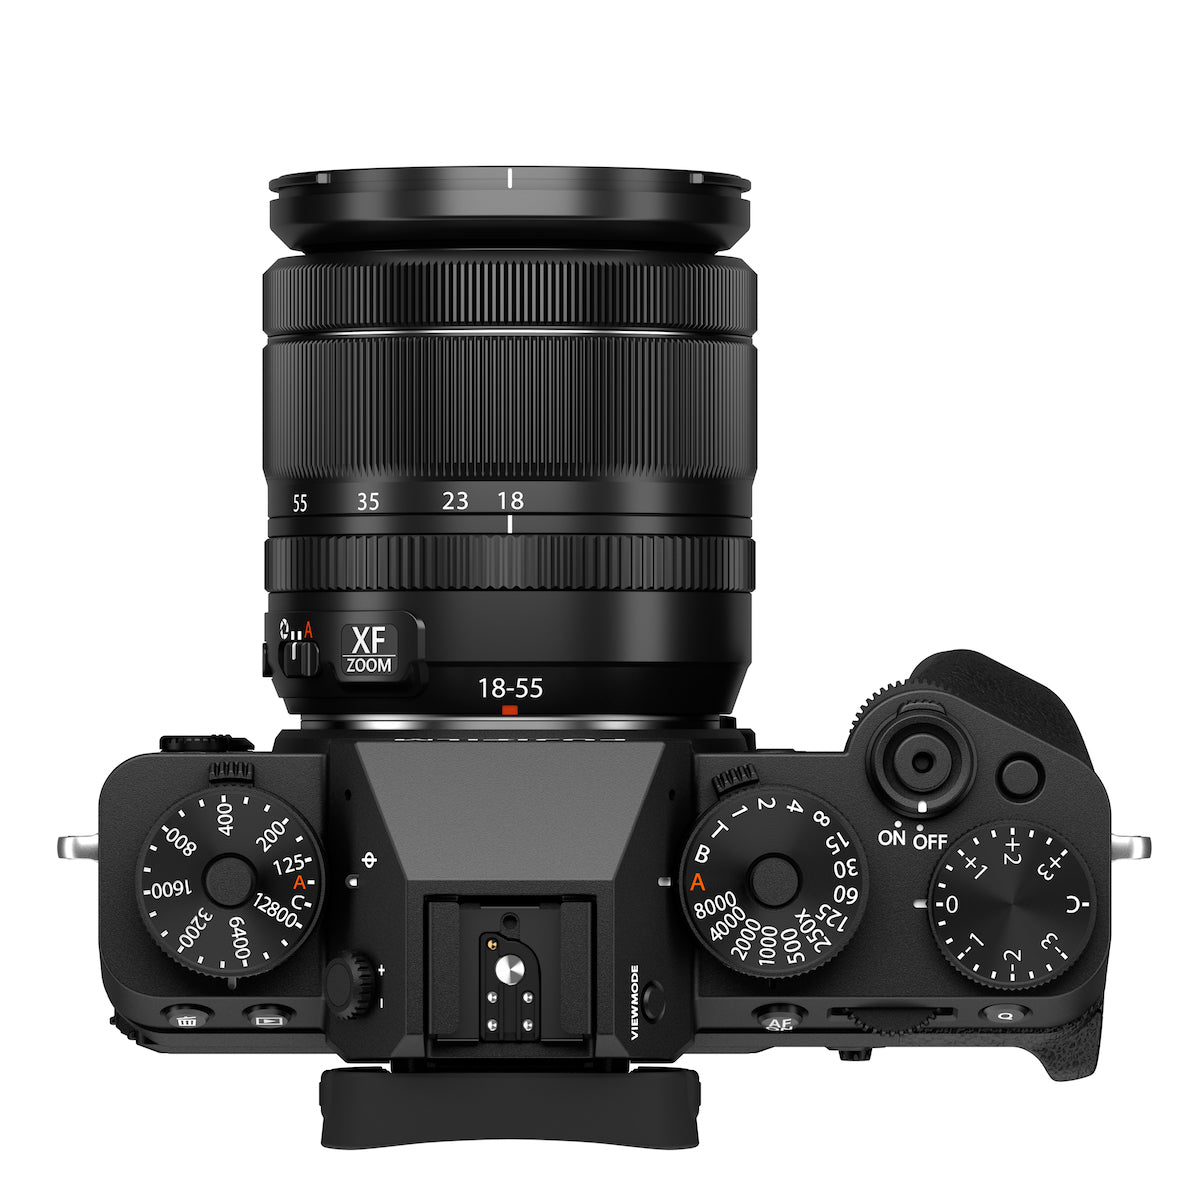 Fujifilm X-T5 Digital Camera w/18-55mm Lens Kit (Black)